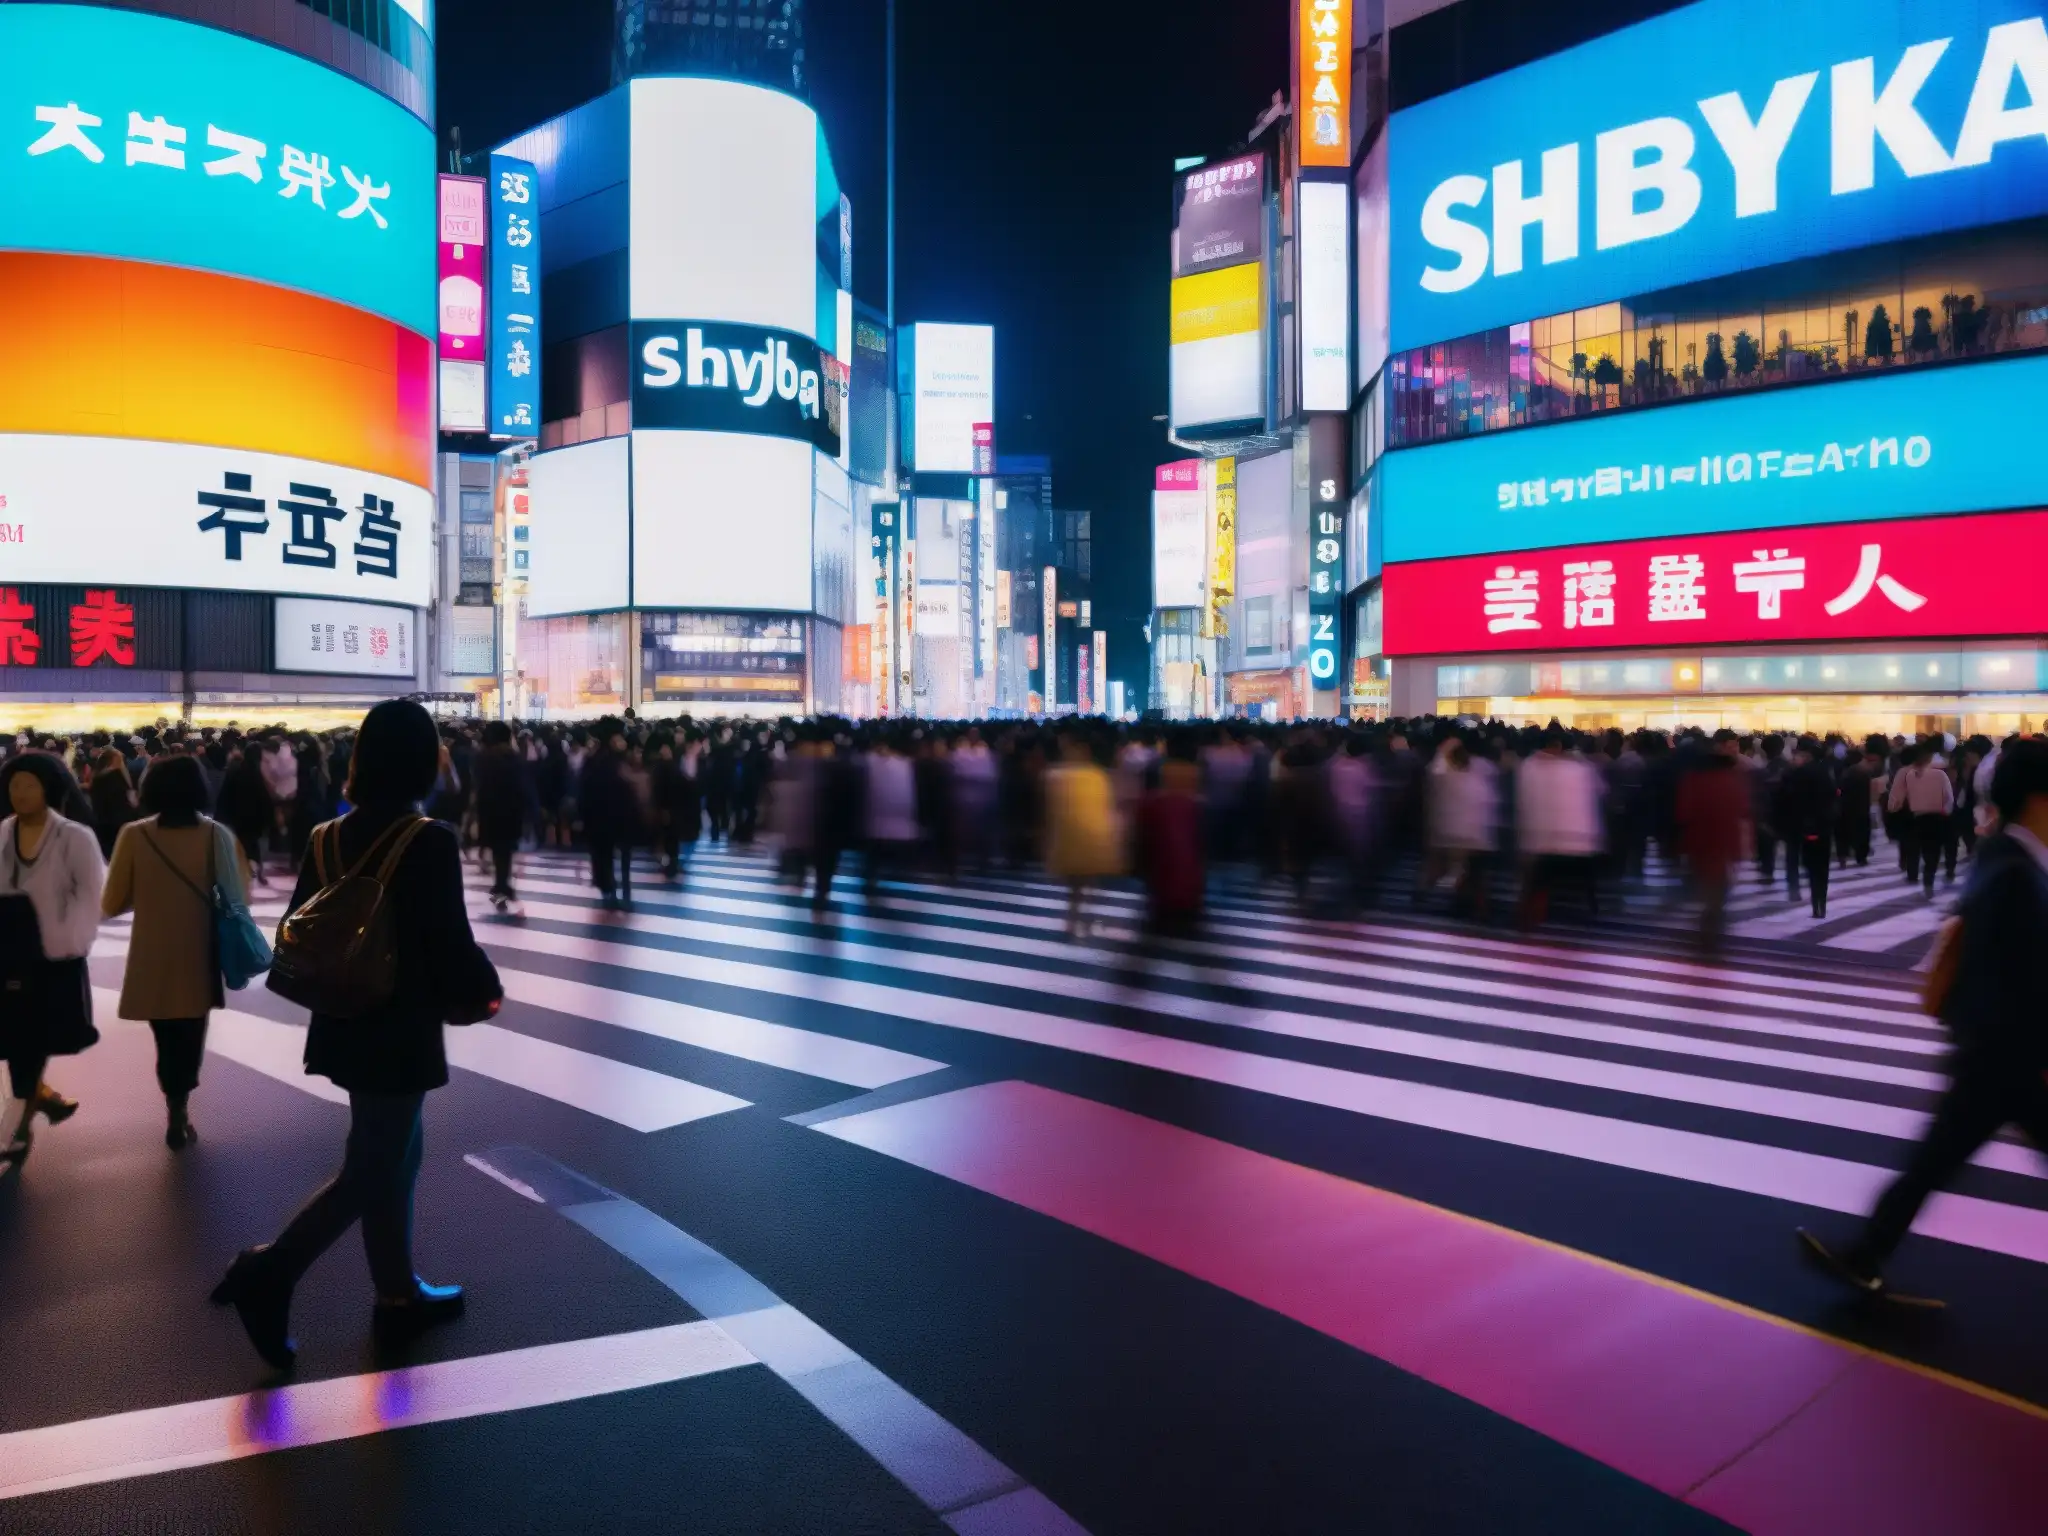 Vista nocturna de Shibuya con luces de carros y peatones, destacando un sutil Yokai entre la multitud, fusionando lo moderno y lo tradicional en Shibuya